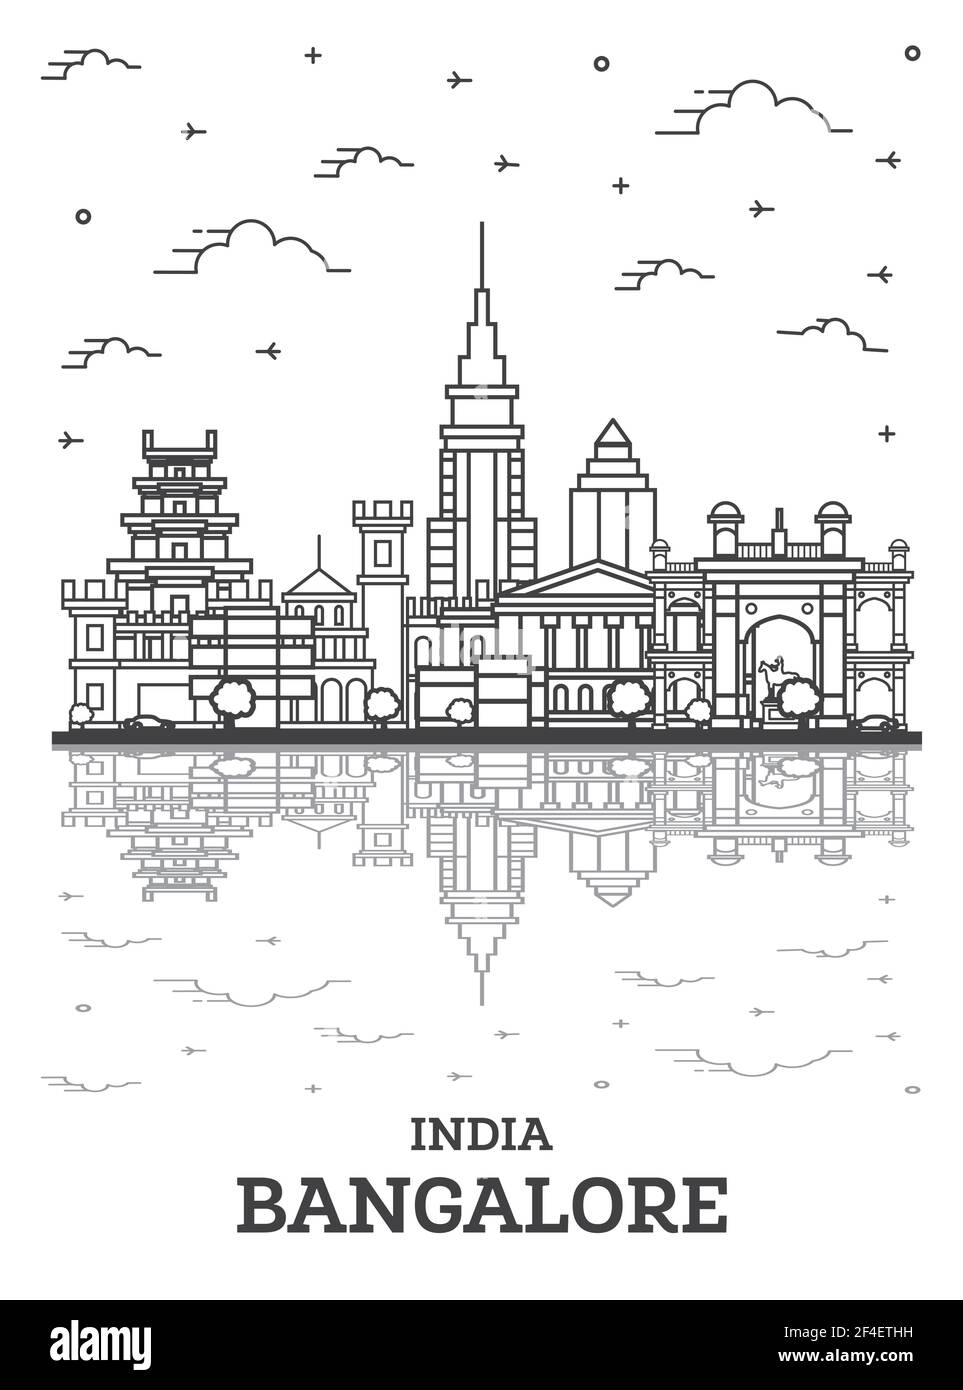 Skizzieren Sie Bangalore India City Skyline mit historischen Gebäuden und Reflexionen isoliert auf Weiß. Vektorgrafik. Stadtbild Bangalore mit Wahrzeichen Stock Vektor